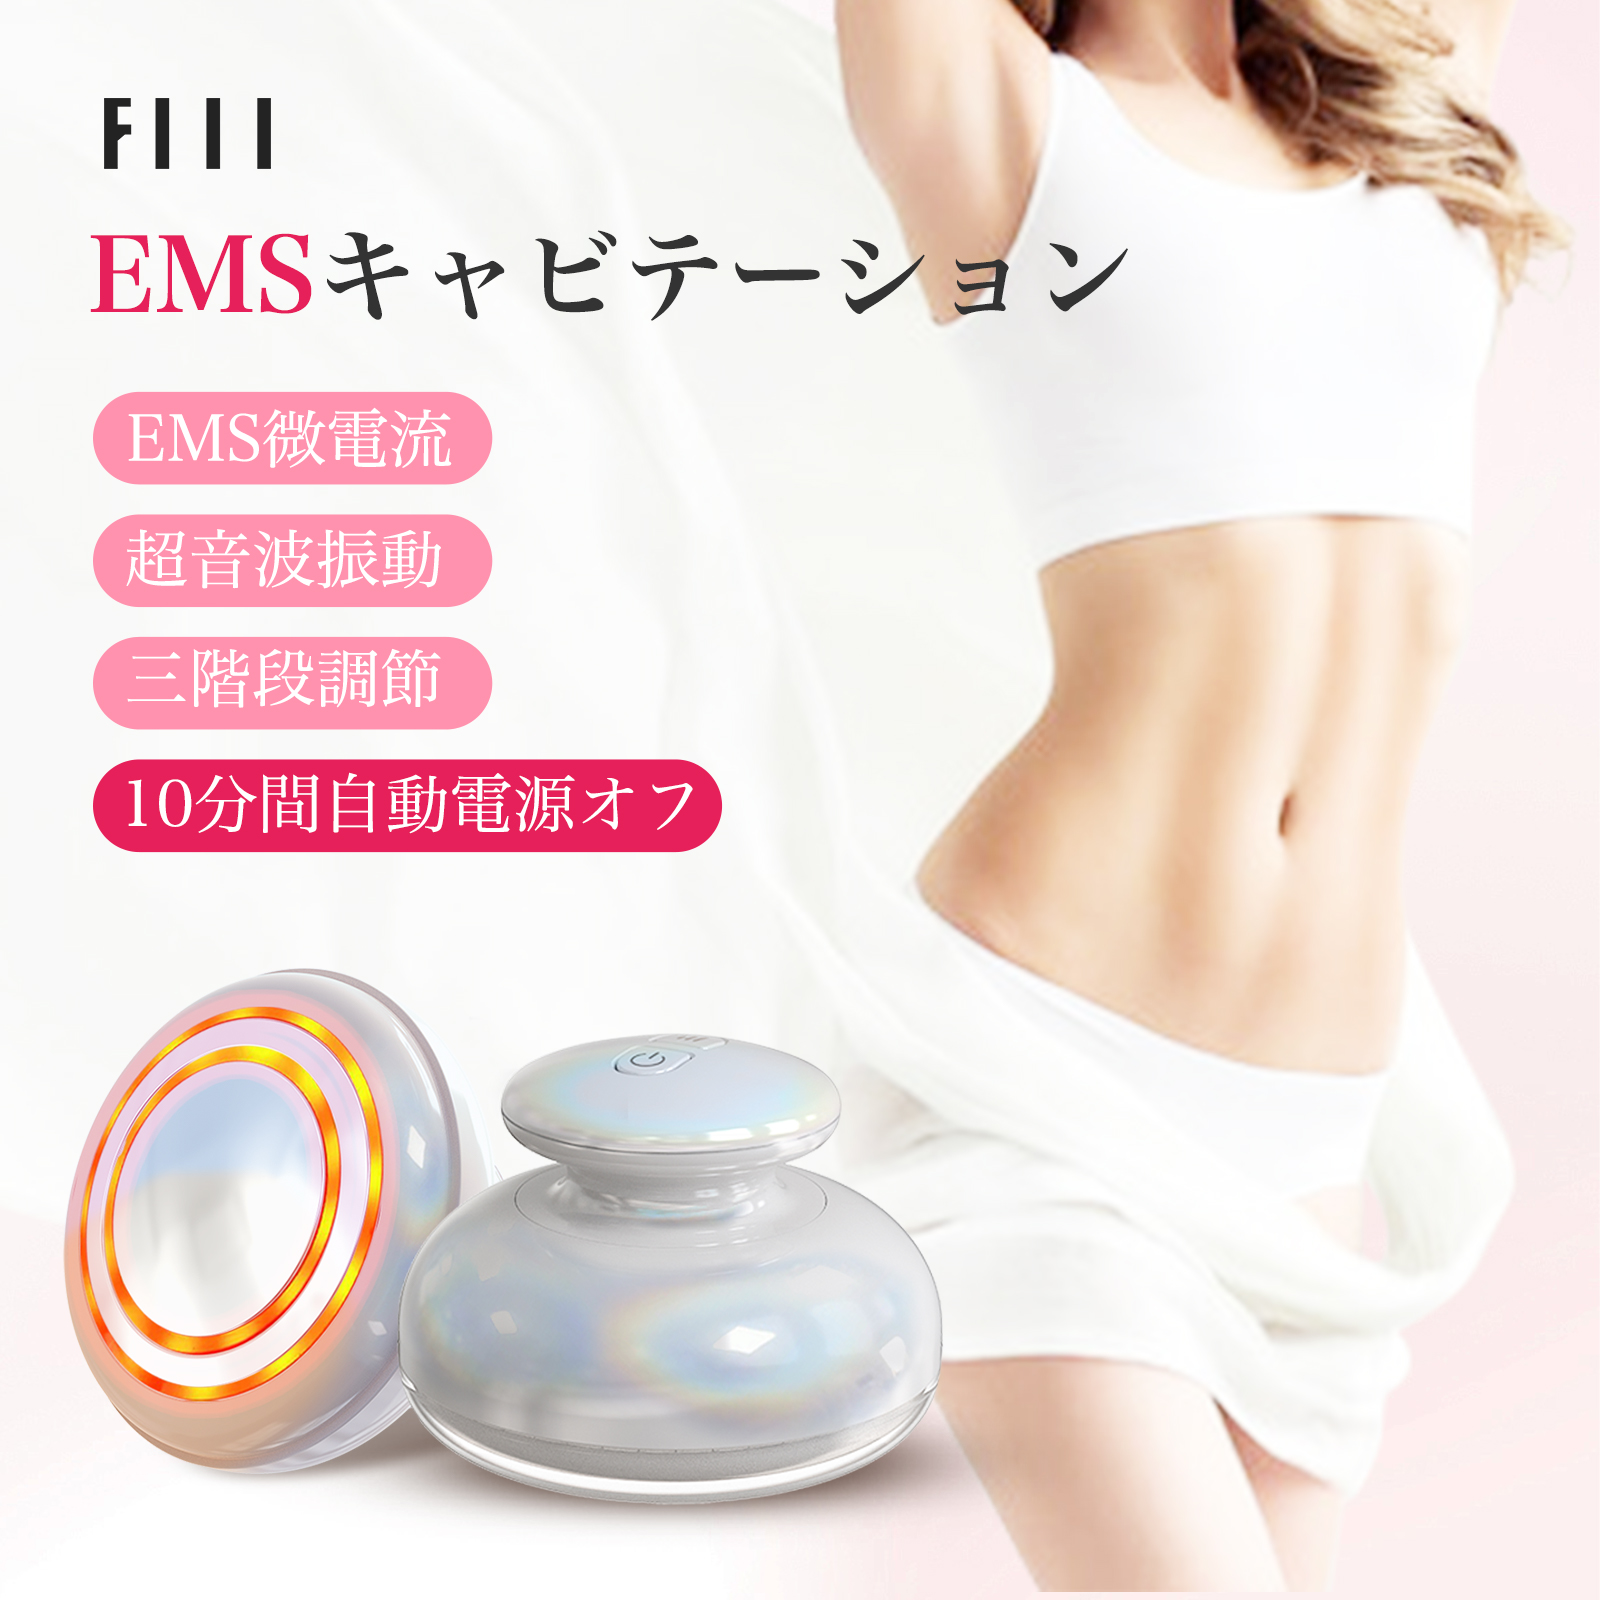 【楽天市場】FIIL キャビテーション EMS ダイエット器具 セルライト 